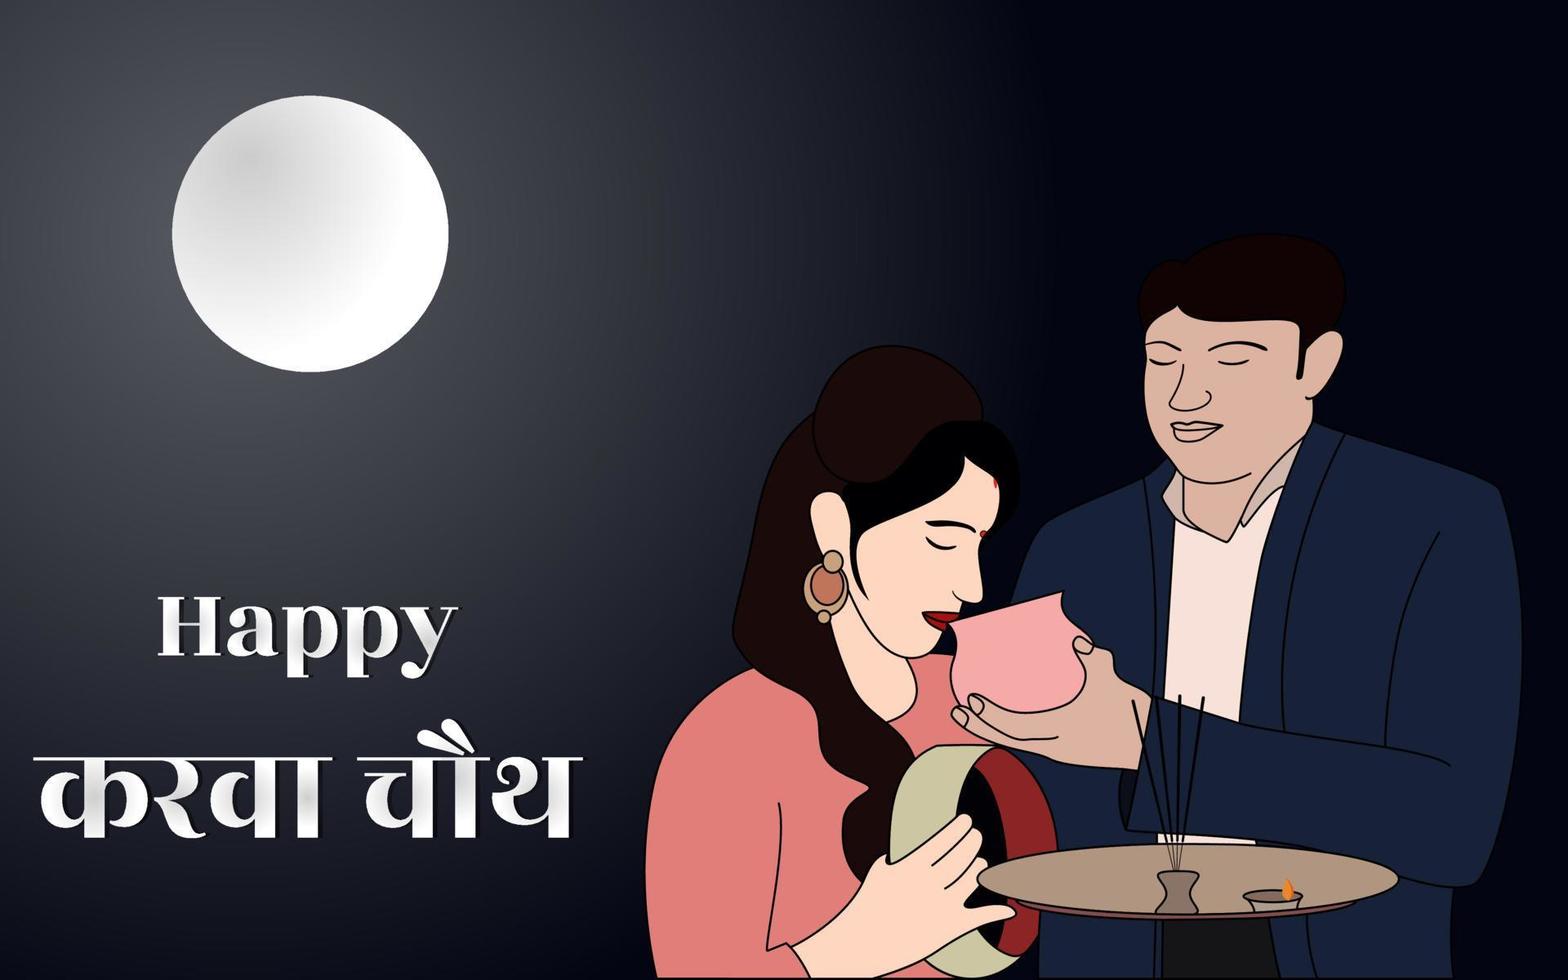 glückliche Karwa Chauth-Vektorillustration, ein Paar, das Karwa Chauth unter dem Mondschein feiert, Karwa Chauth-Feiervektorillustration. vektor